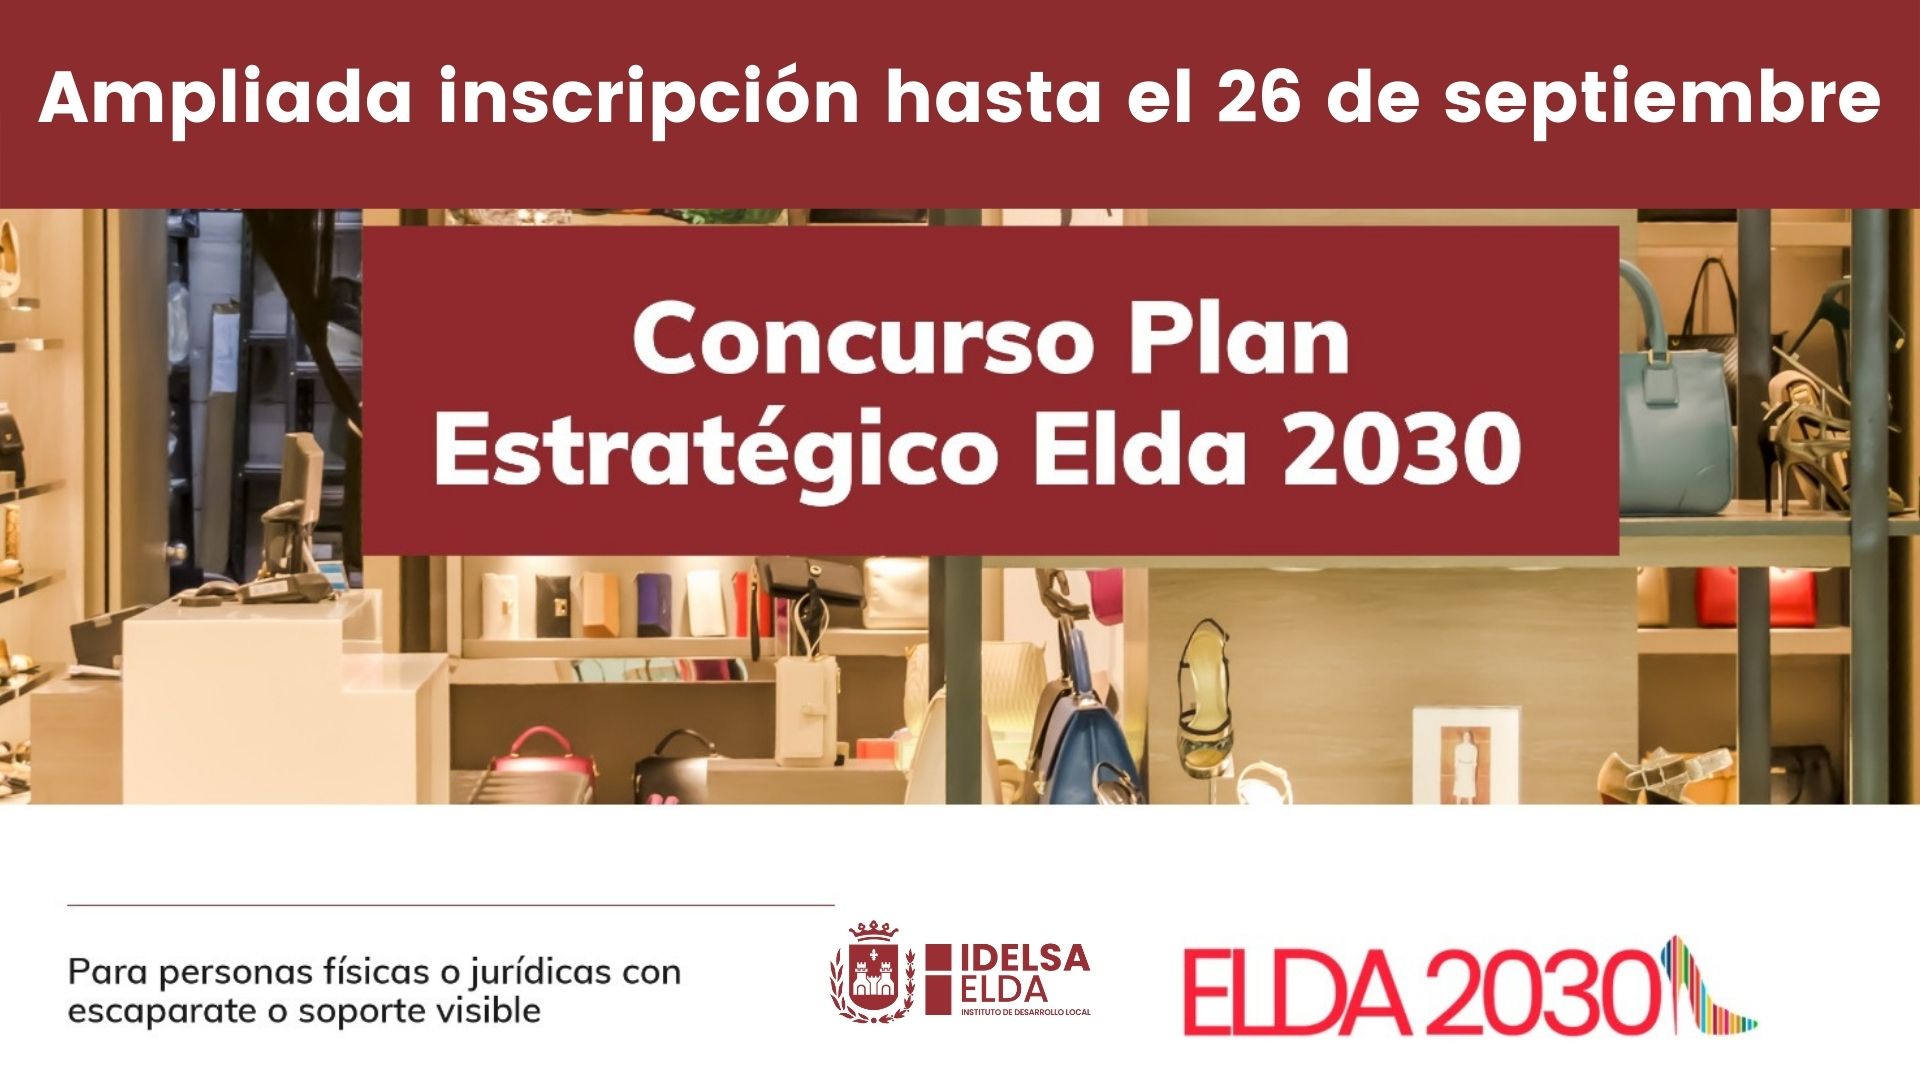 Idelsa amplía hasta el 26 de septiembre el plazo de inscripción para los comercios eldenses que deseen participar en el Concurso #Elda2030